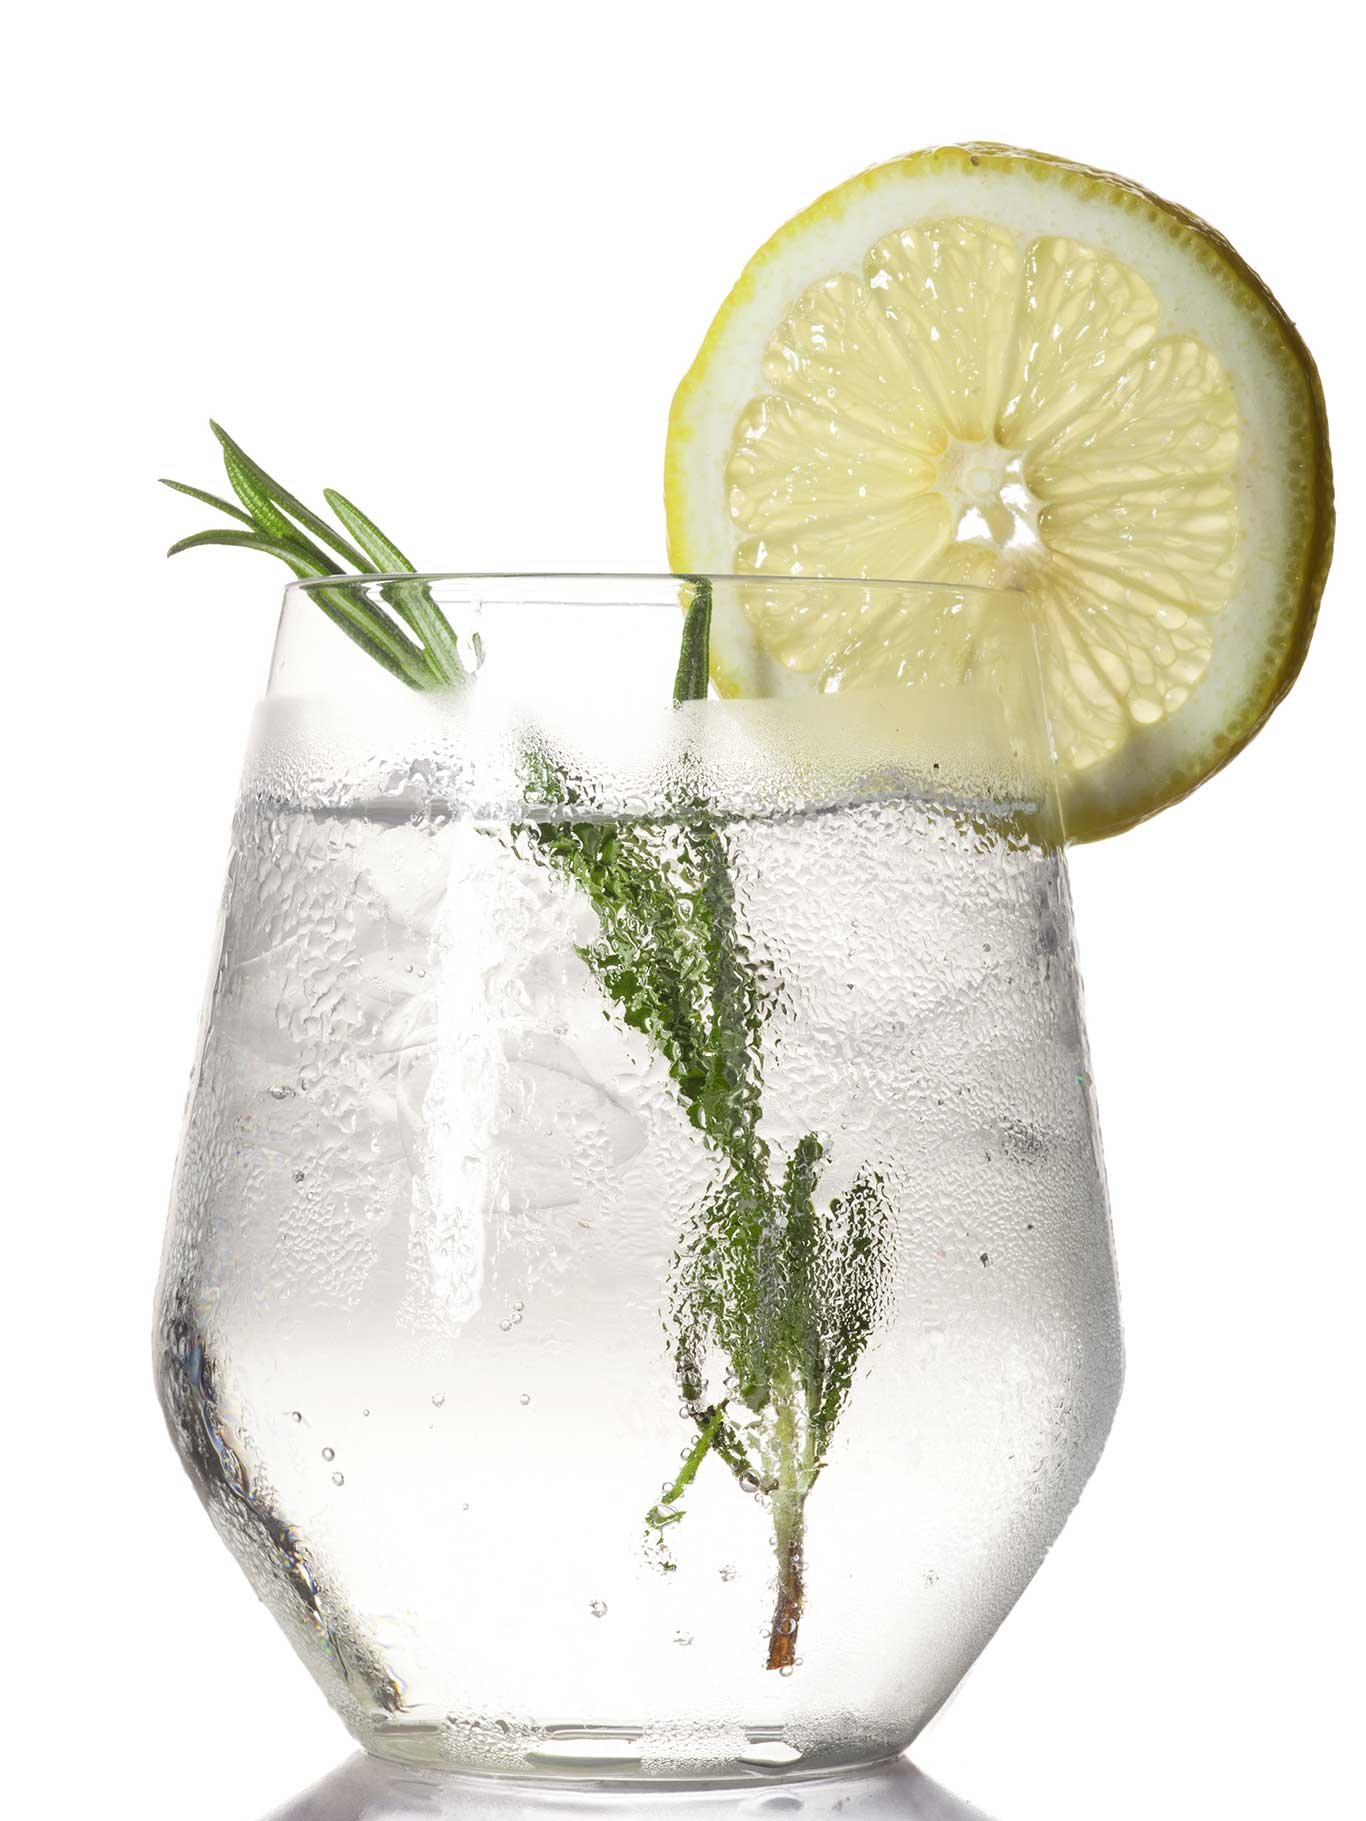 Der Typische Gin Tonic als erfrischender Sommerdrink.